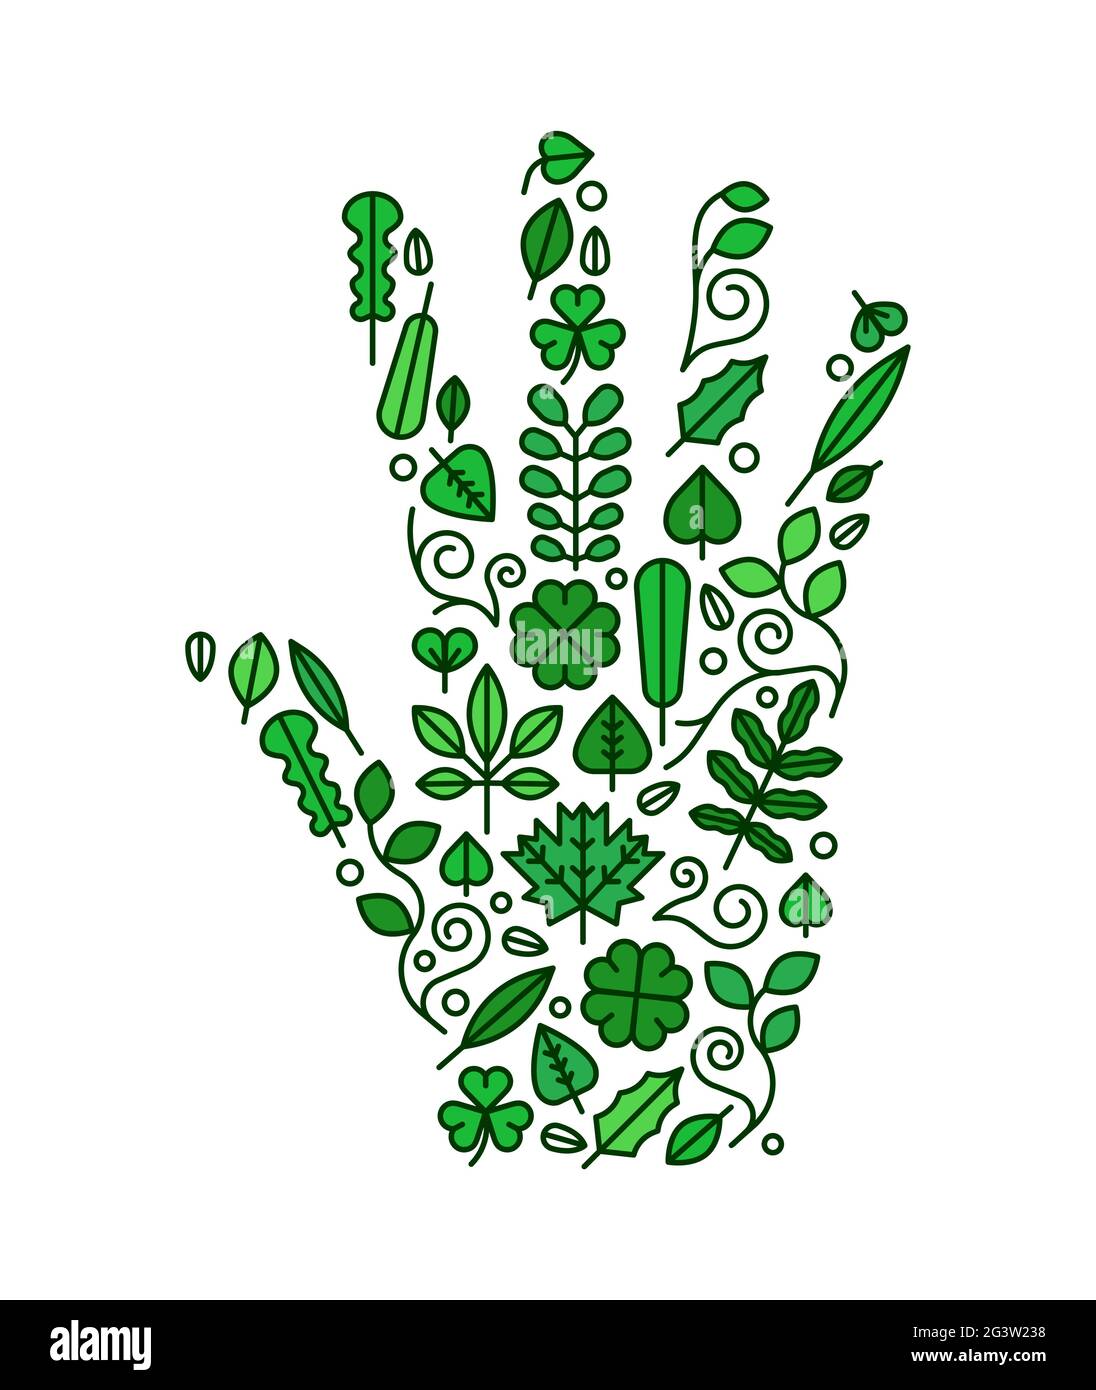 Offene menschliche Hand aus flachen grünen Blatt-Symbolen auf isoliertem weißem Hintergrund. Natur Hilfe Illustration Konzept oder umweltfreundliche Projektgestaltung. Stock Vektor